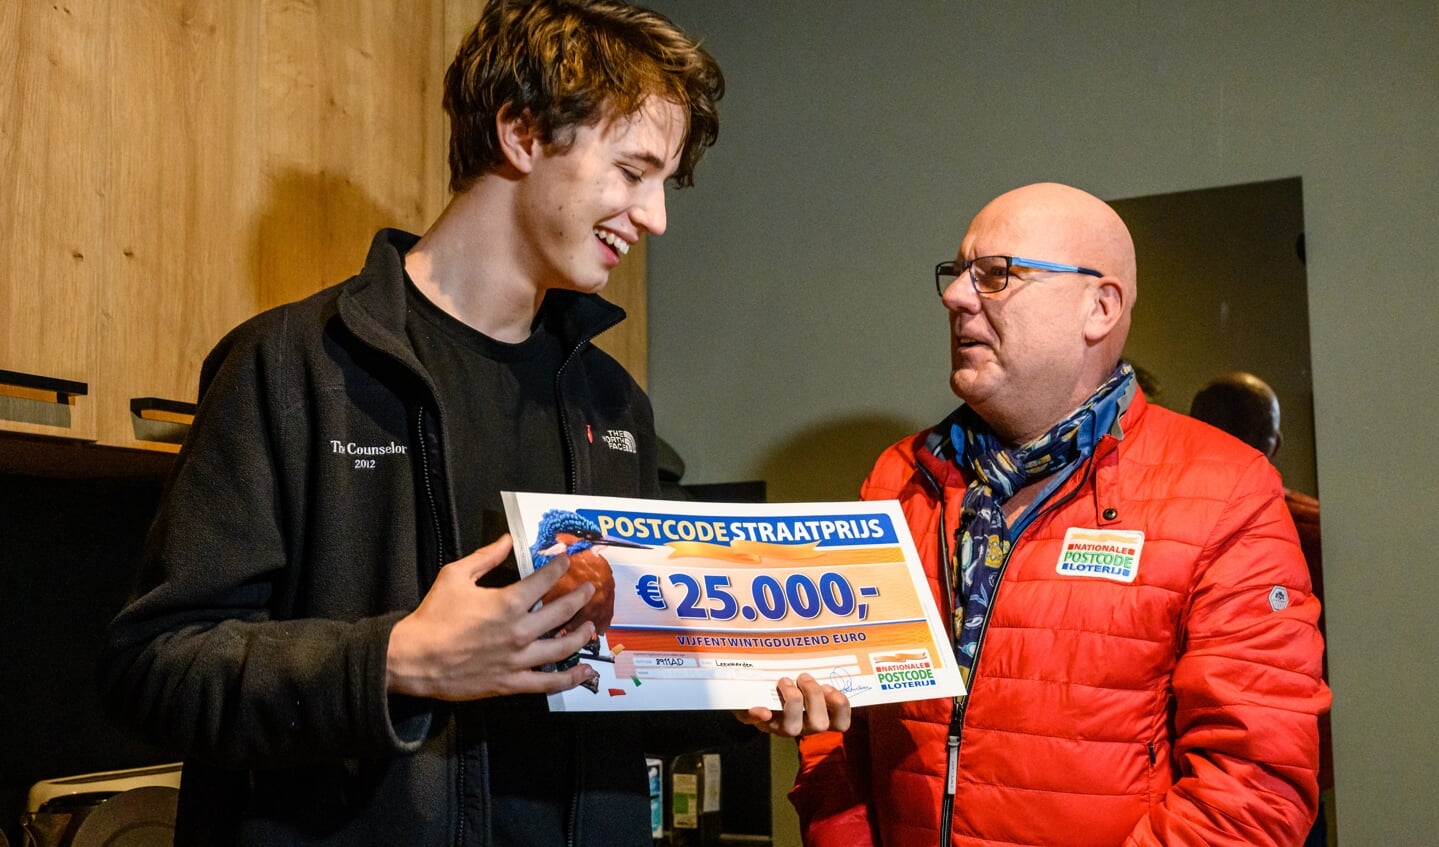 Max uit Leeuwarden wint PostcodeStraatprijs van 25.000 euro